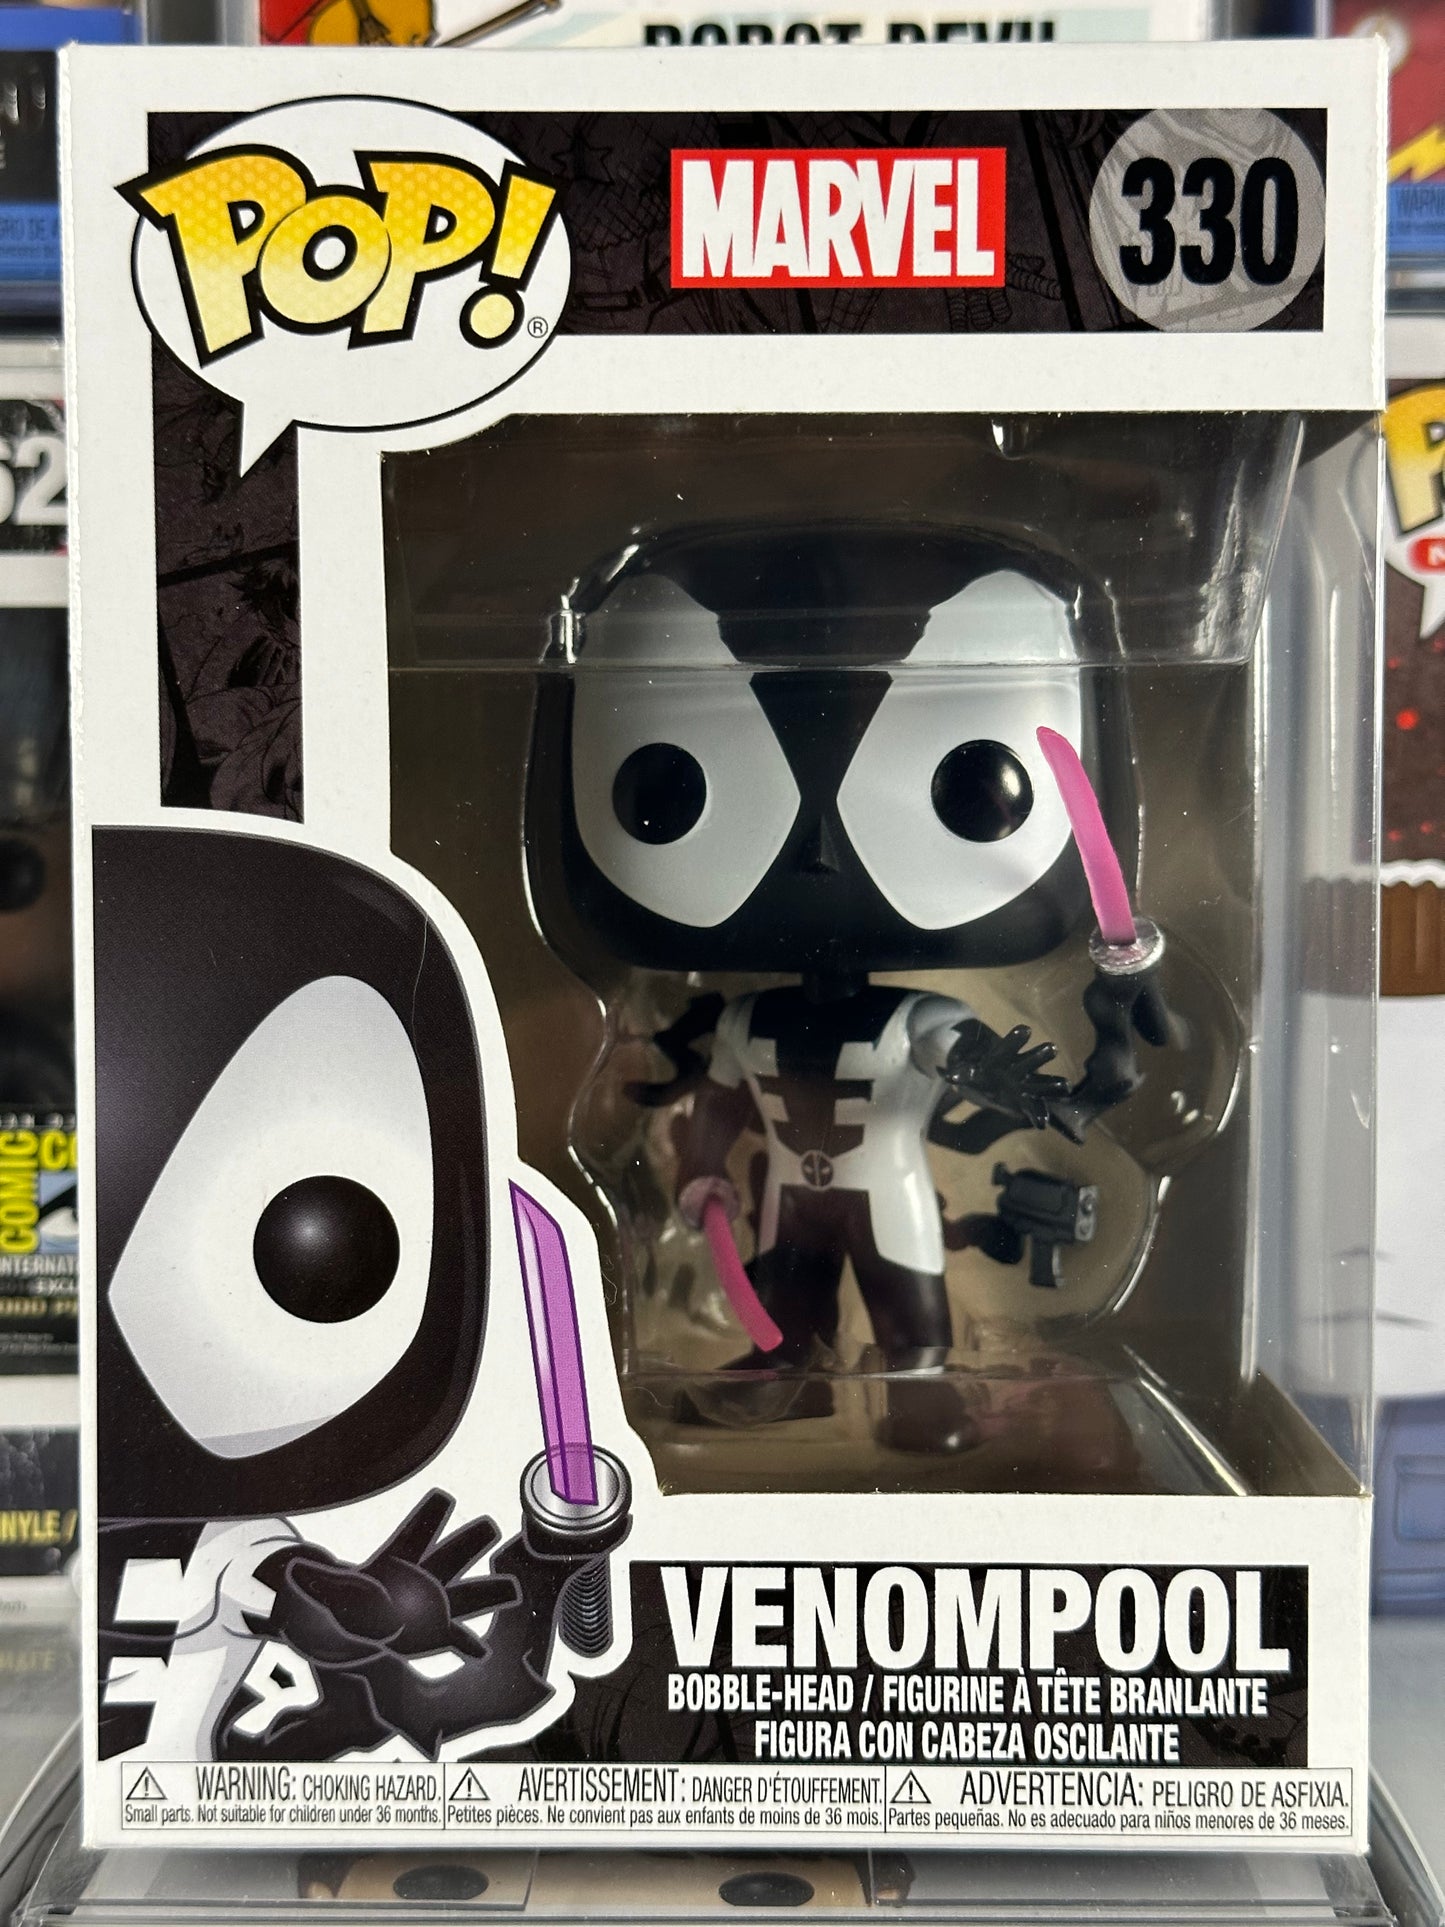 Marvel Deadpool - Venompool (Back in Black) (330) Vaulted